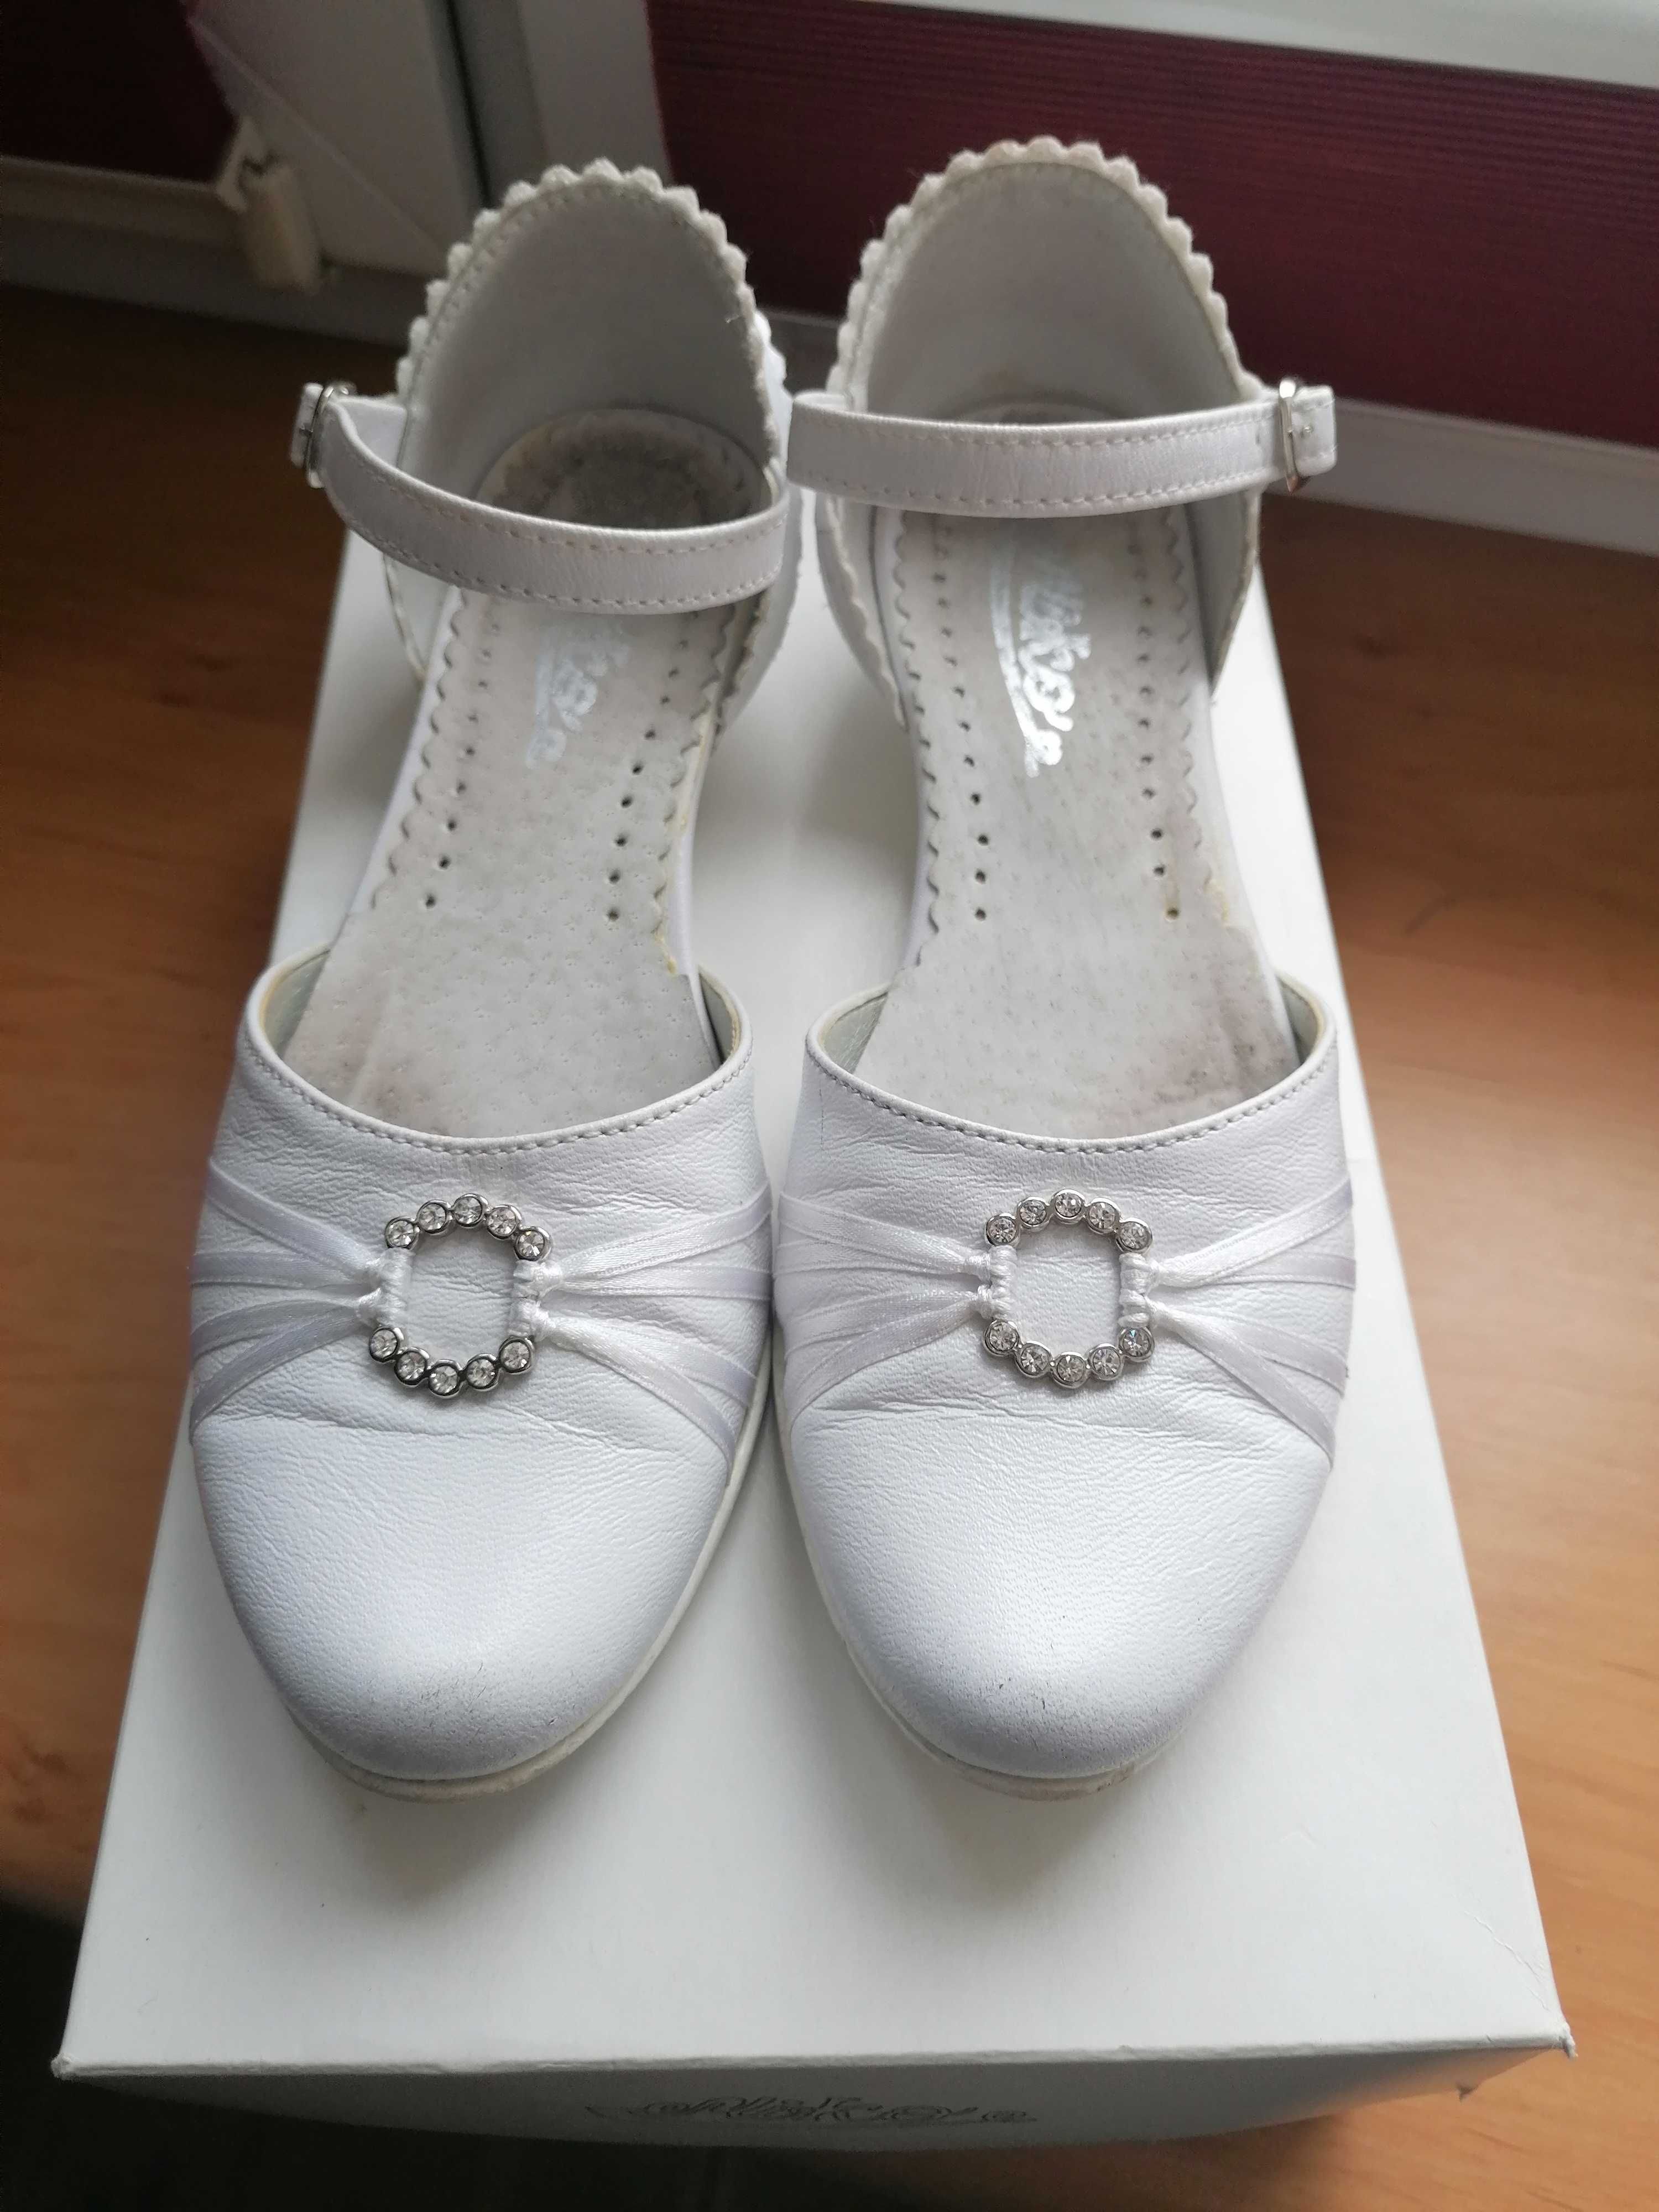 Buty białe (komunijne) rozmiar 32, wkładka 20,5 cm